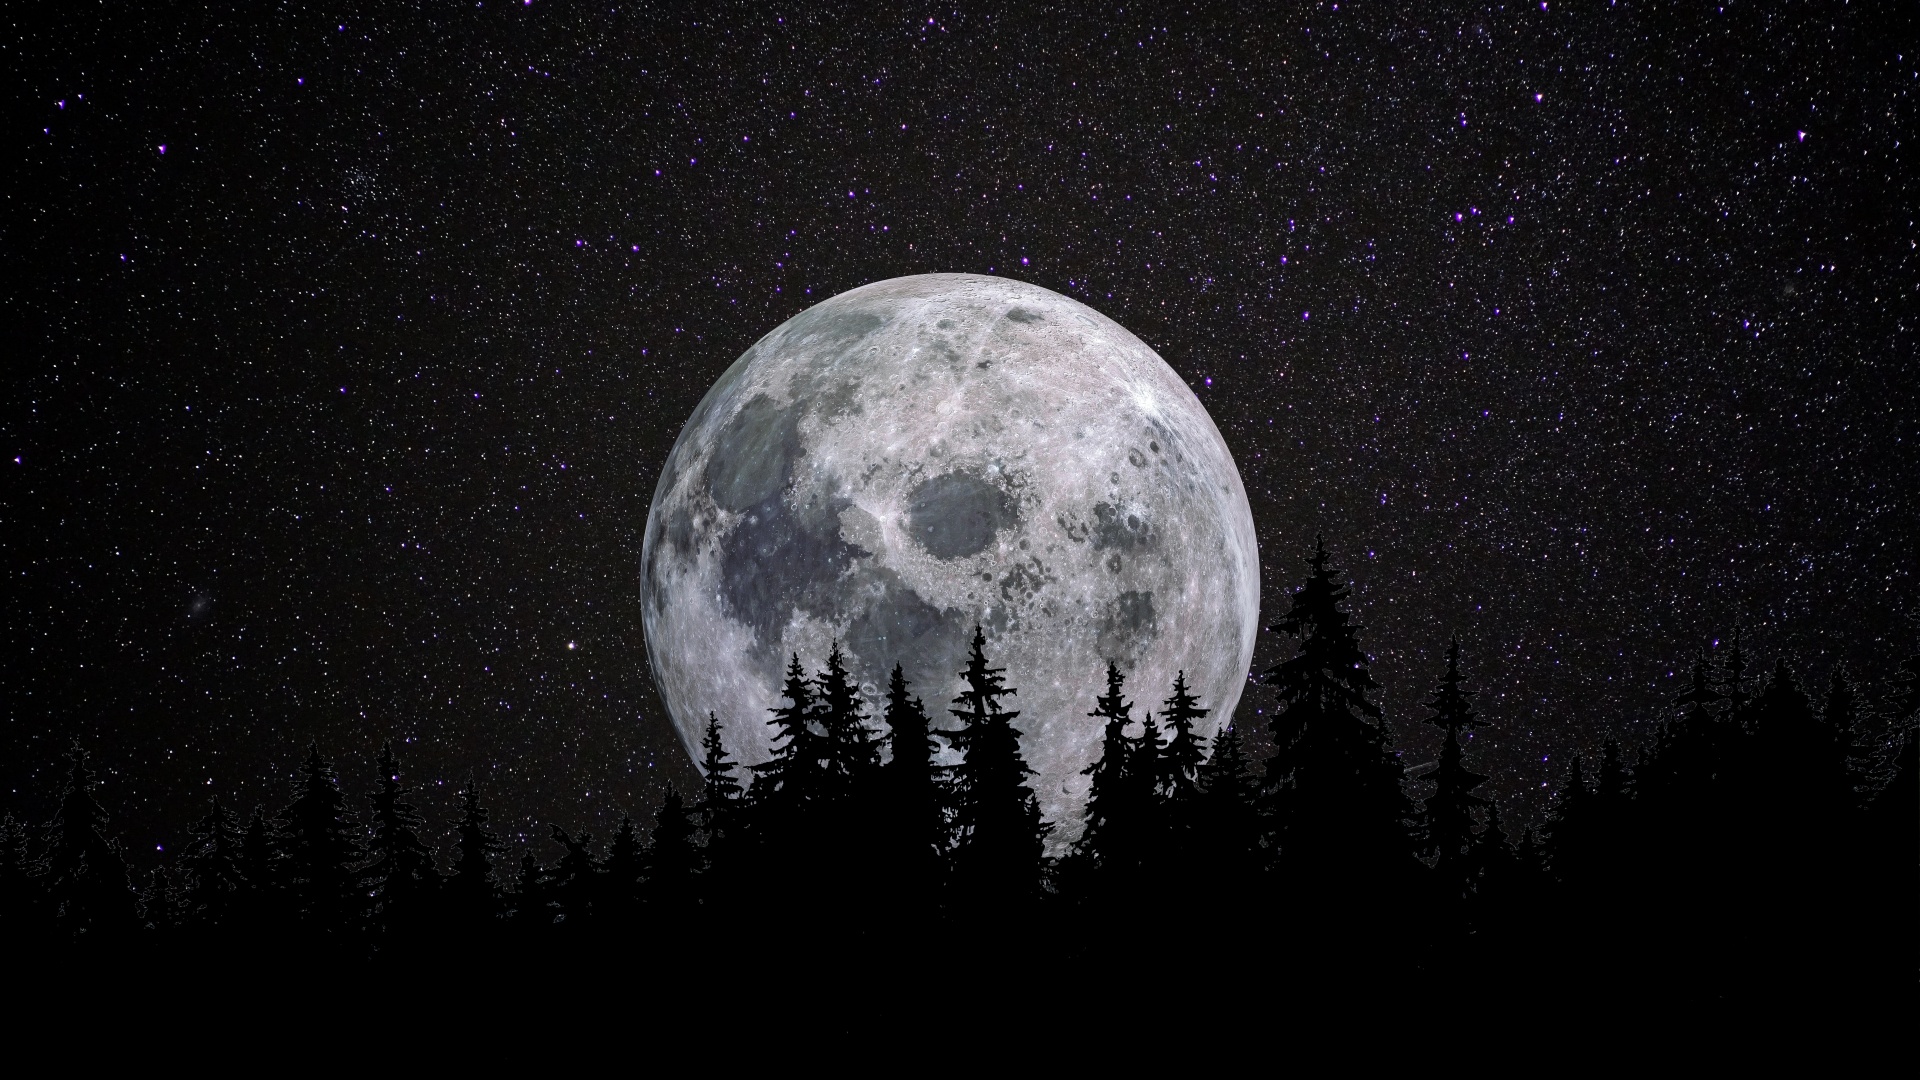 Hình nền trăng tròn 4K, rừng, đêm, thiên nhiên tối sẽ mang đến cho bạn một bầu không khí tĩnh lặng, yên bình và cực kỳ đẹp mắt. Với độ phân giải 4K sắc nét, bạn cảm nhận được thiên nhiên trong trẻo, đêm tối thật sự đã trở nên rực rỡ hơn bao giờ hết. Hãy cài đặt ngay hình nền này và thưởng thức thiên nhiên tuyệt đẹp của đêm tối.